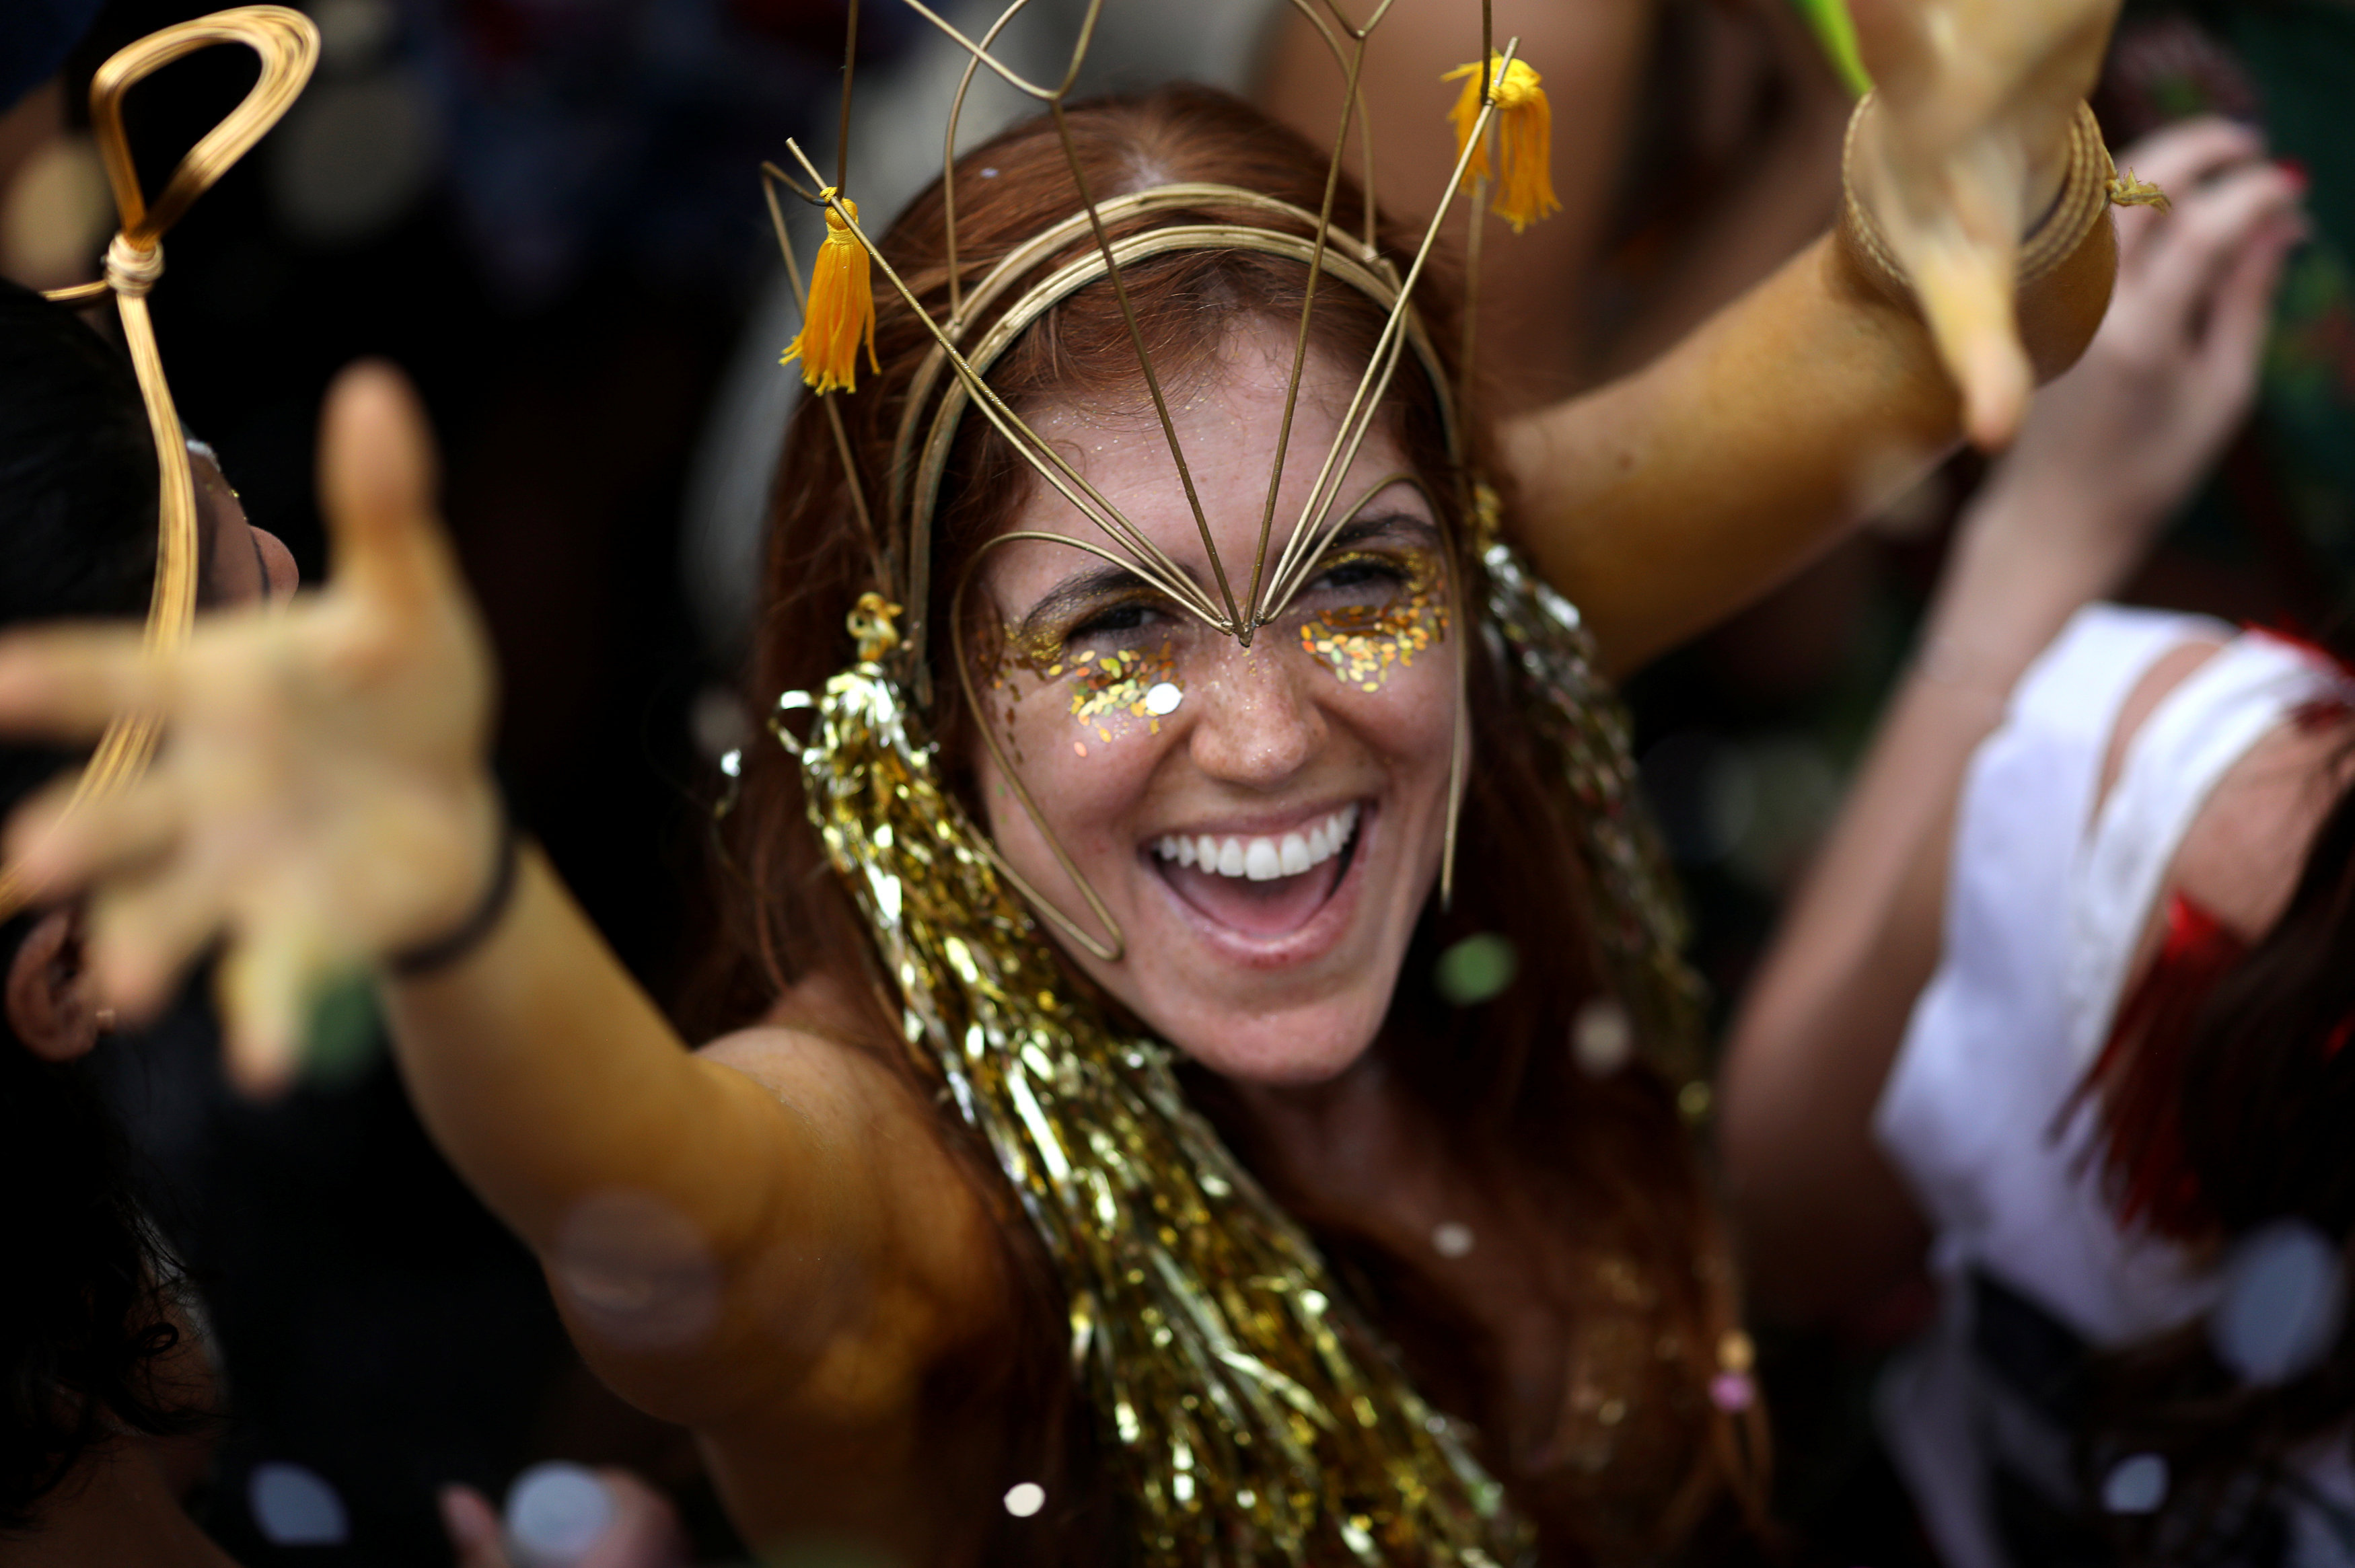 Горячие бразильские девушки на карнавале в Рио: фото